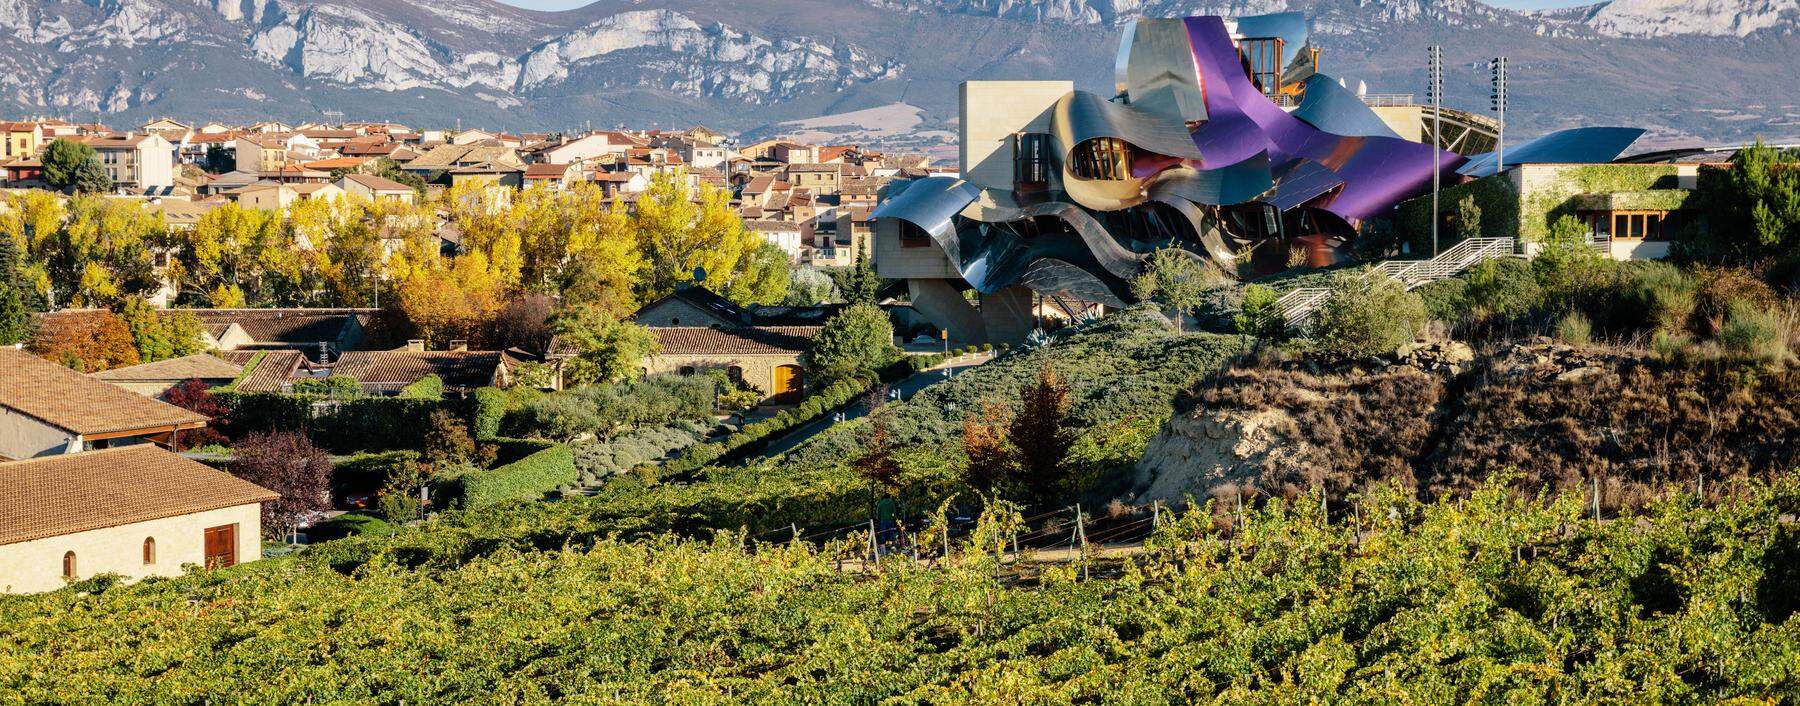 Buntes Wellendach inmitten der Weinregion Rioja. Der kanadische Stararchitekt Frank O. Gehry setzte im Weingut Marqués de Riscal neue Maßstäbe.